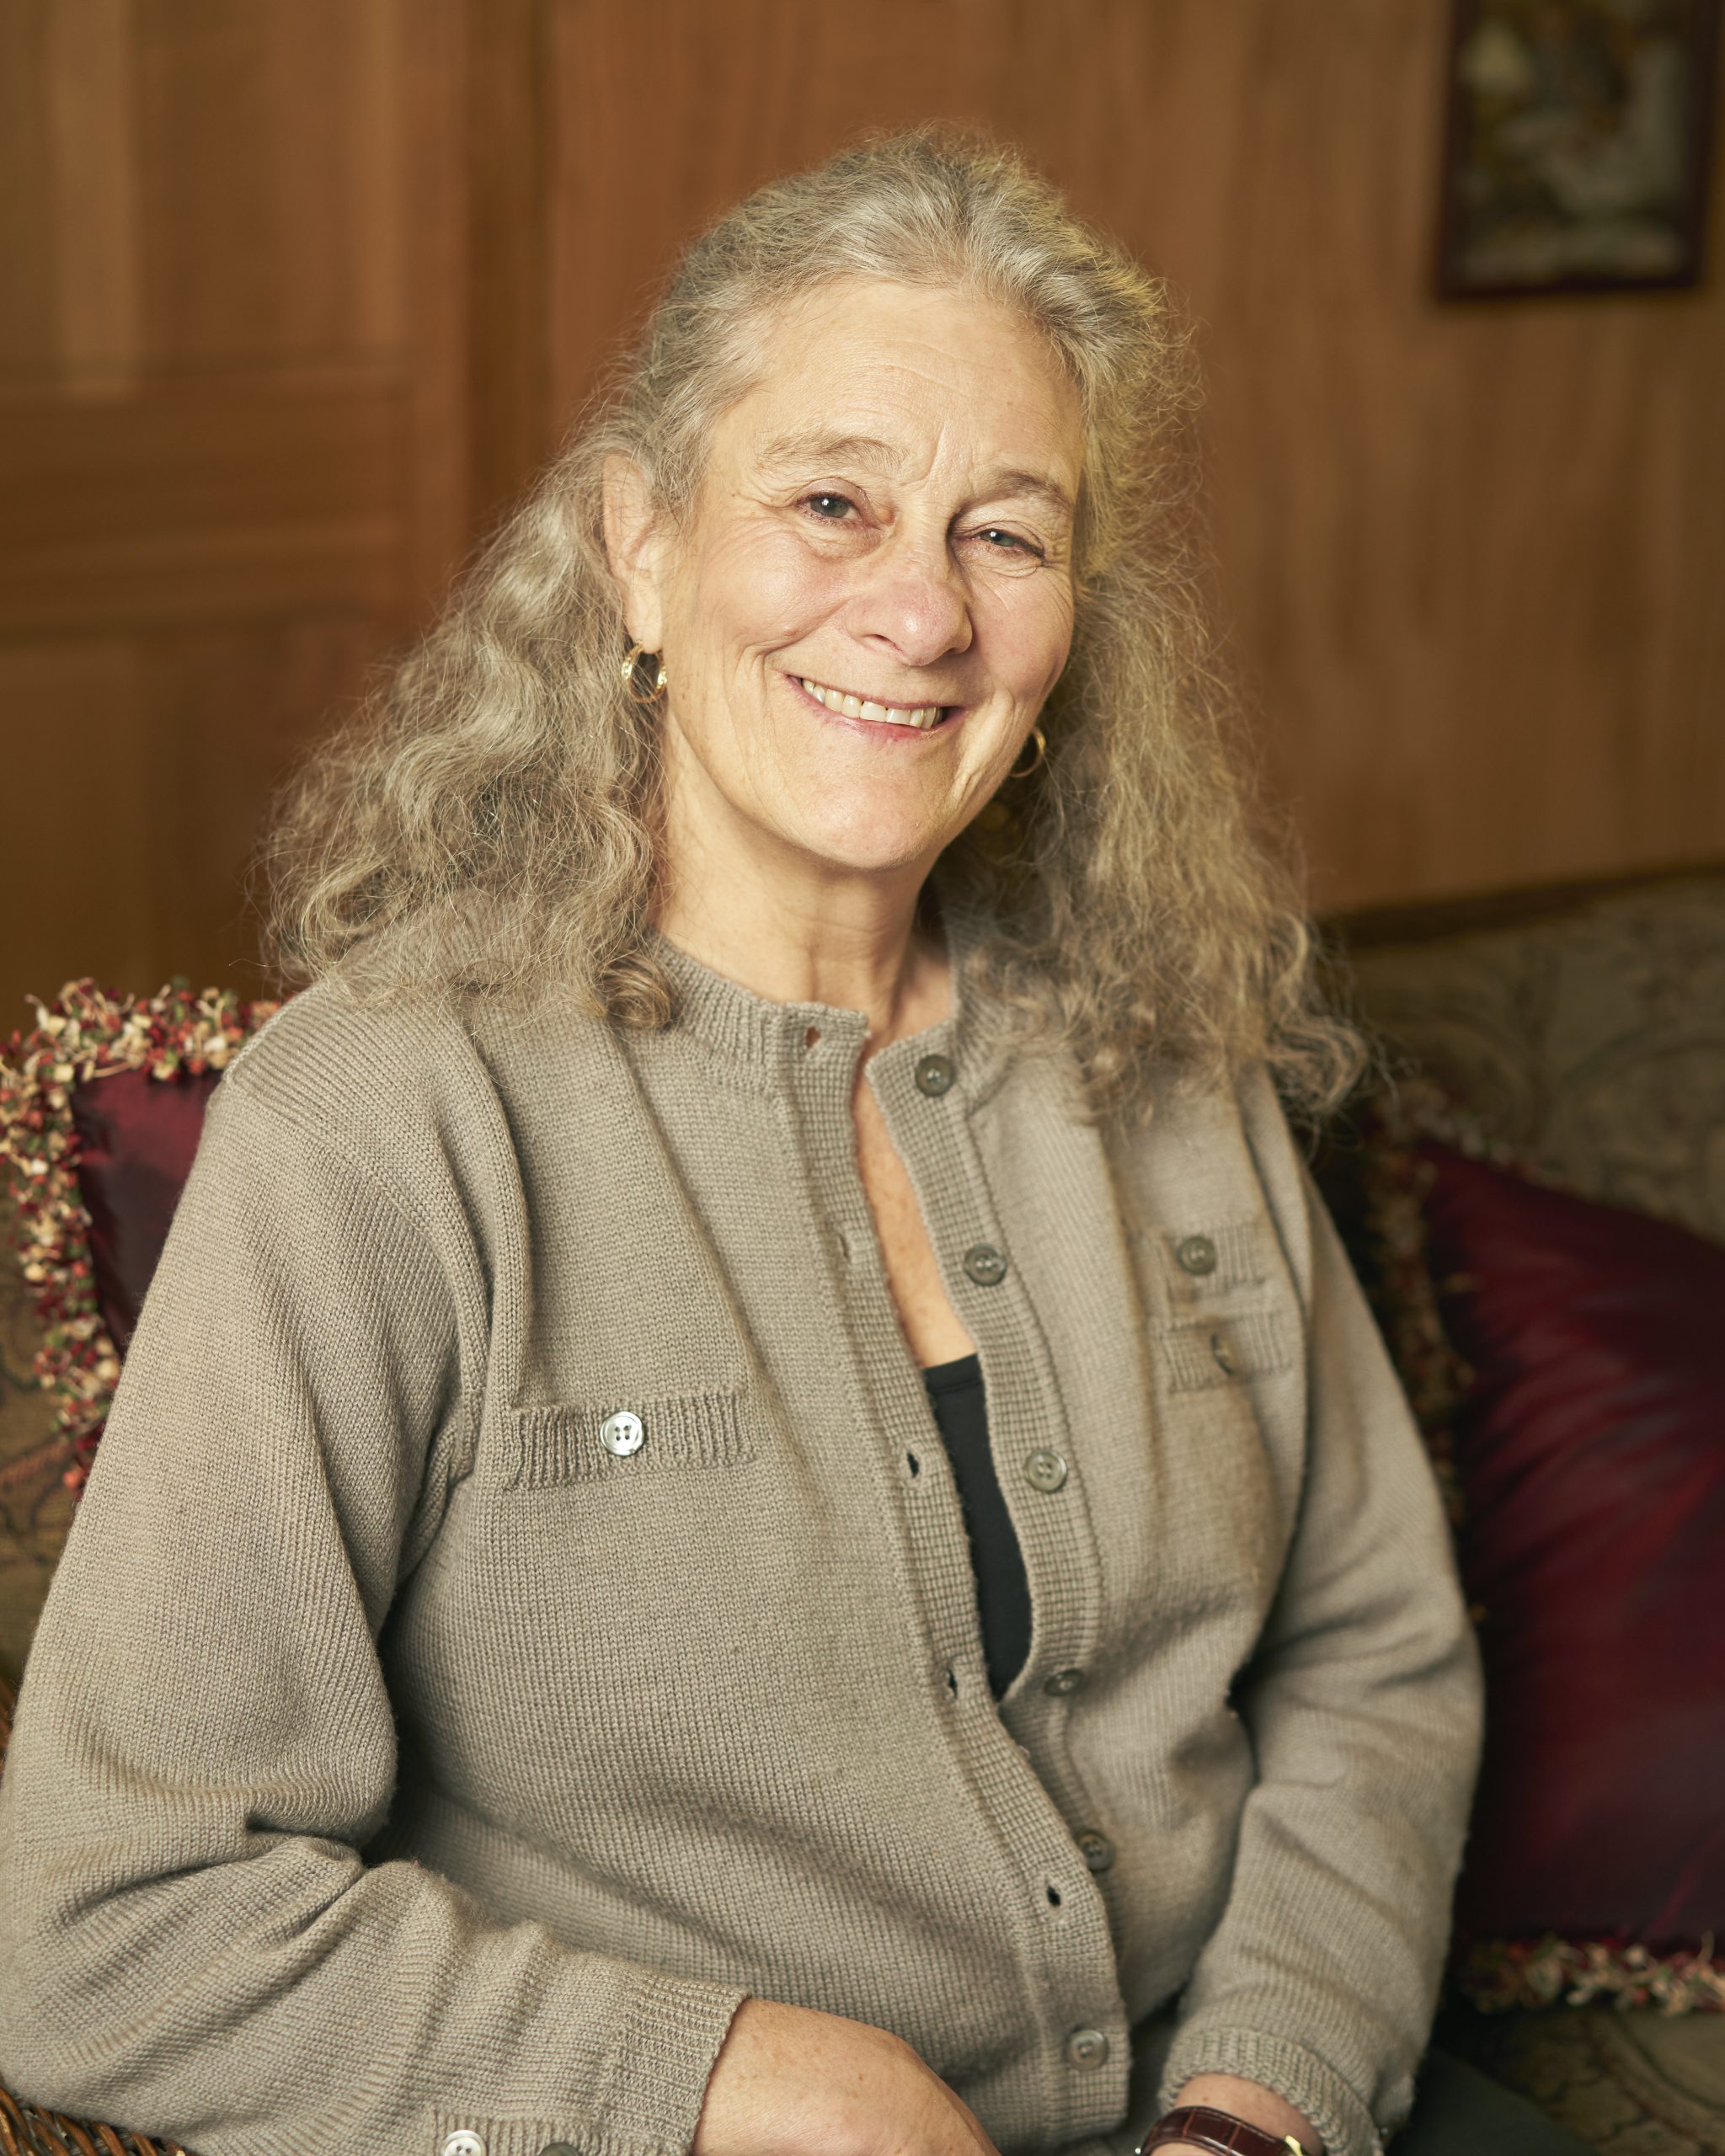 Image: Photo portrait of Wise Associate, Debra McLean.